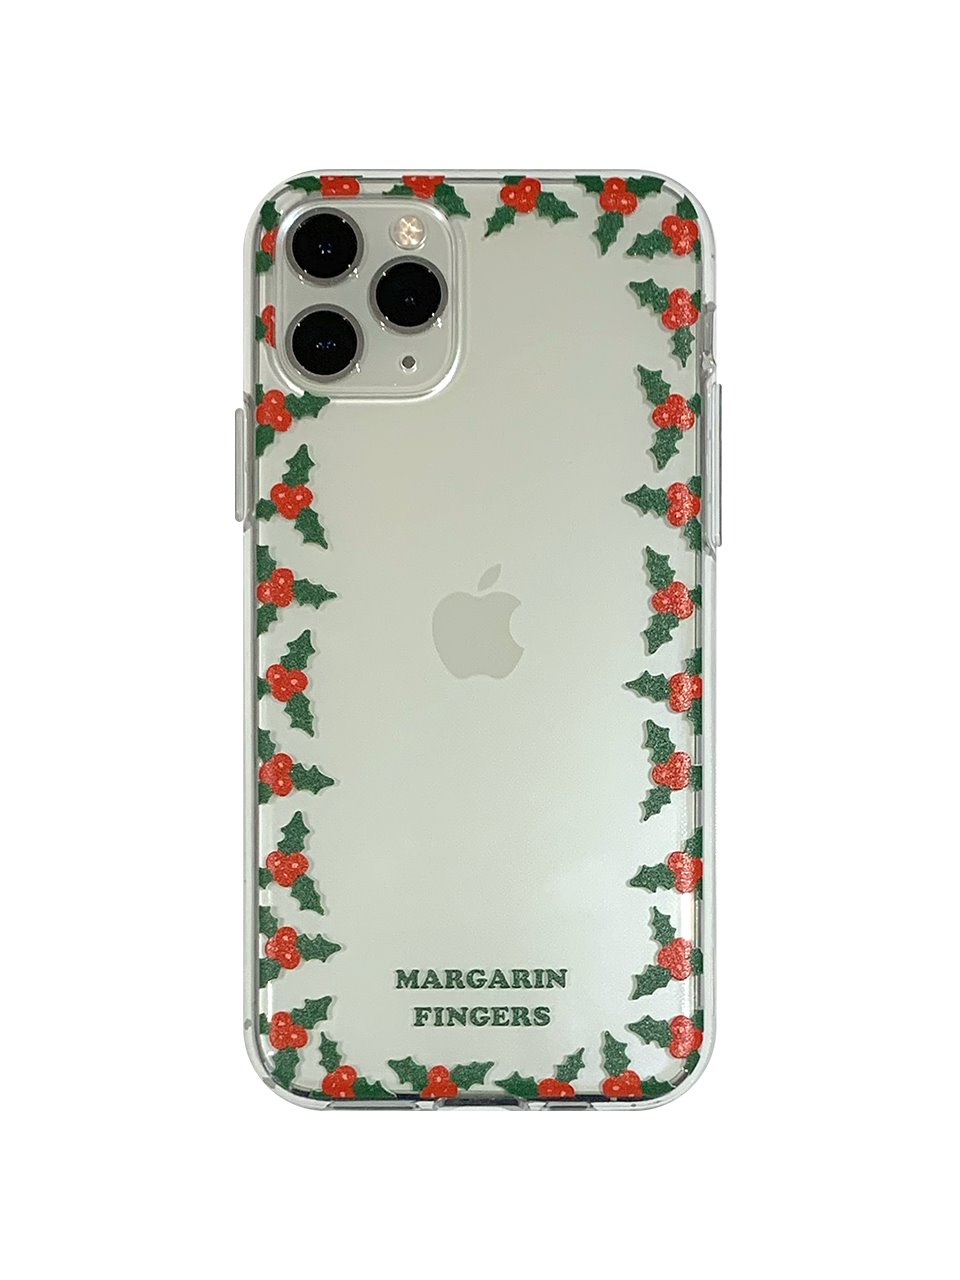 Merry iPhone case